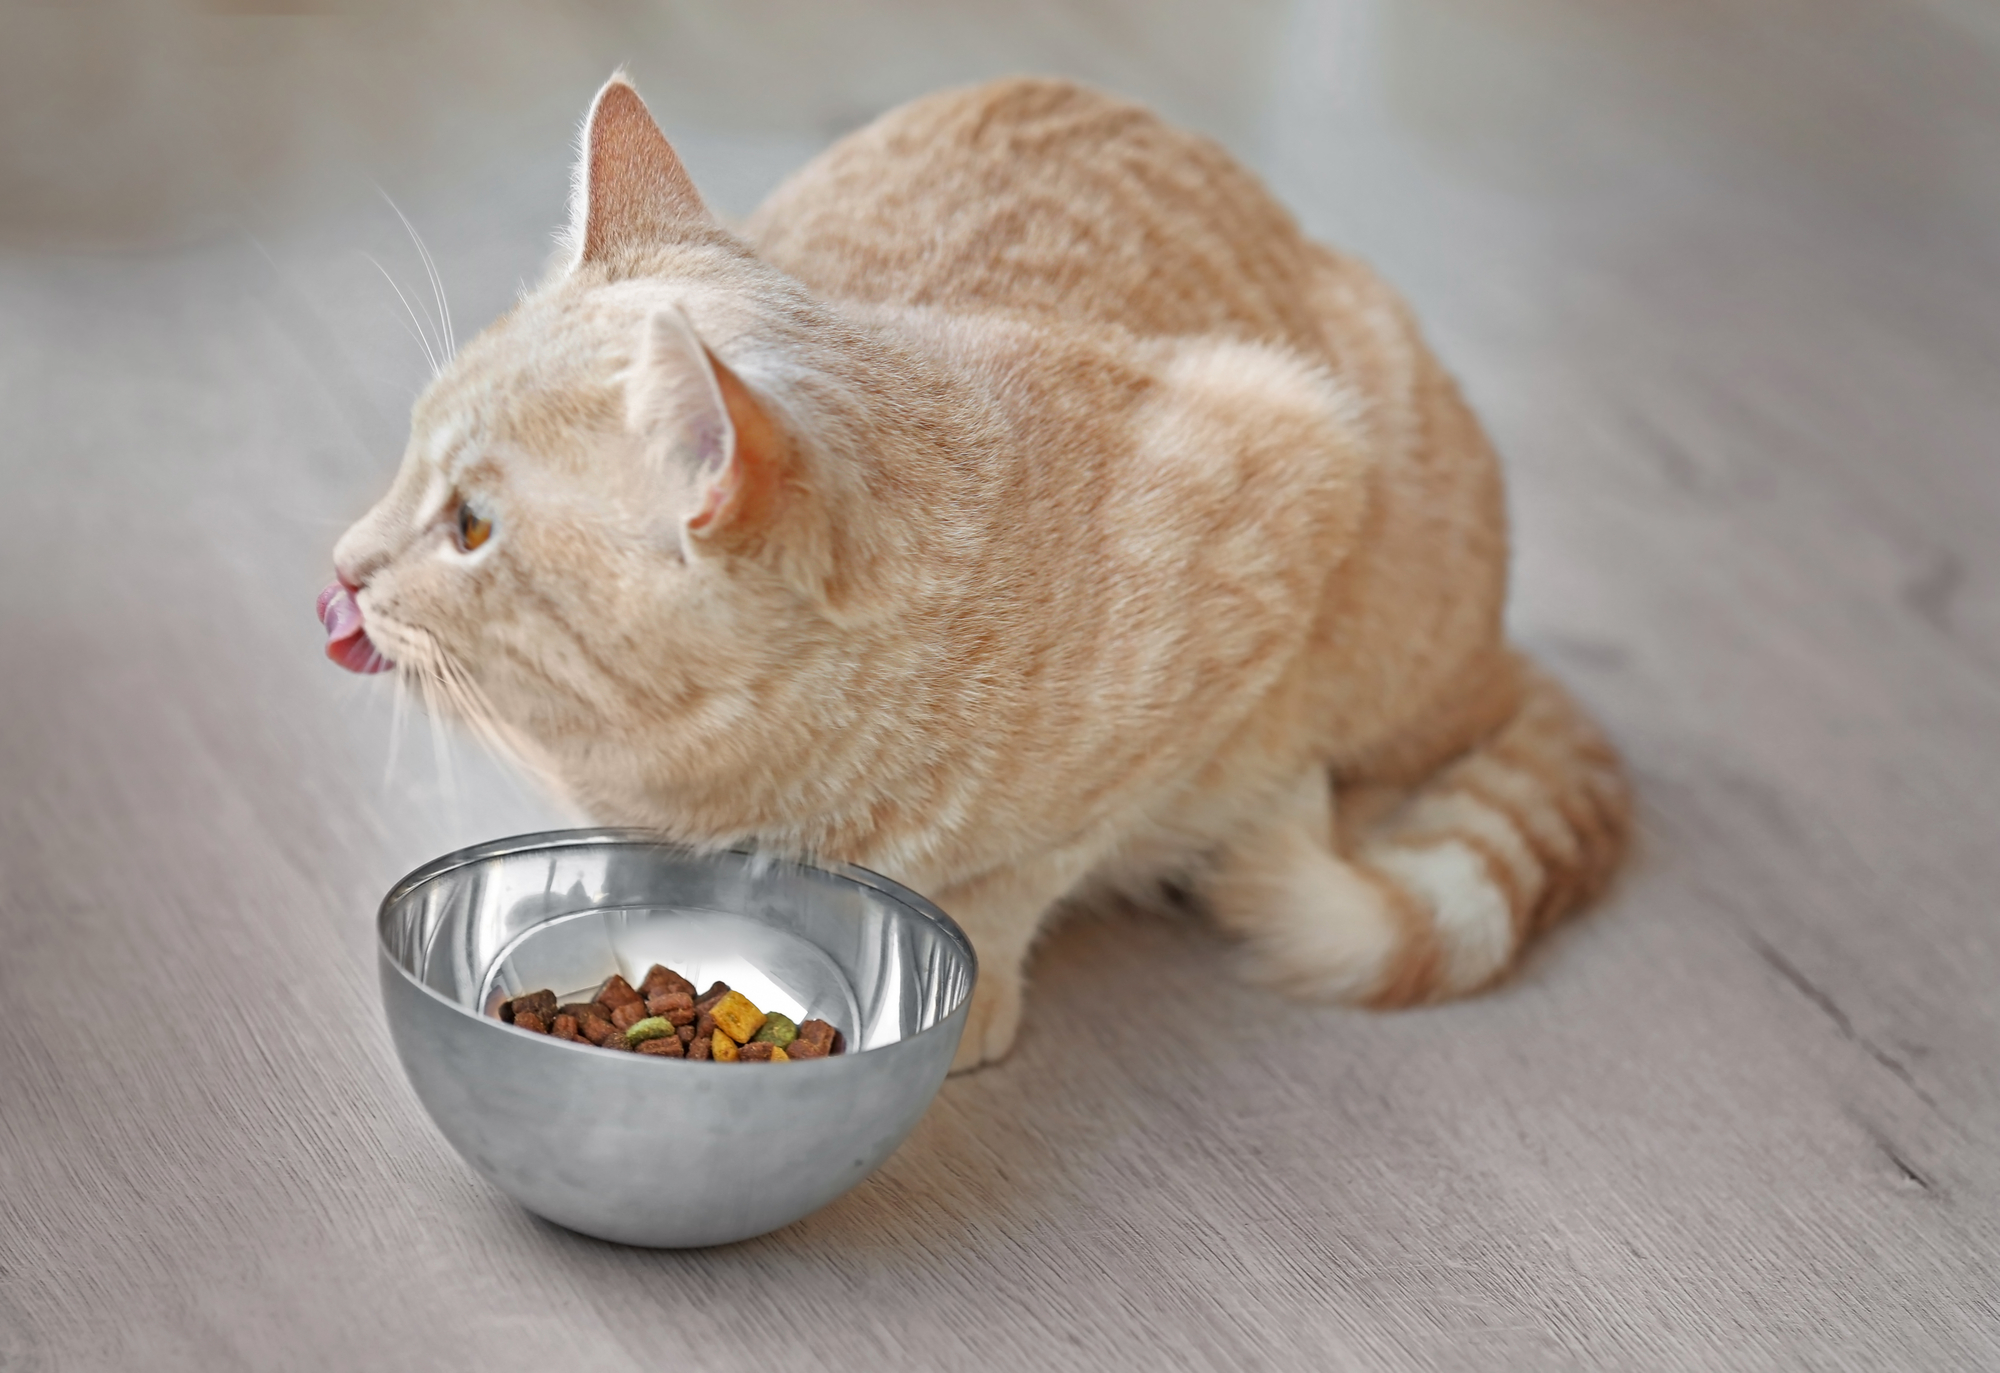 Сухой корм или натуральная пища: чем лучше кормить кошку? - Росконтроль